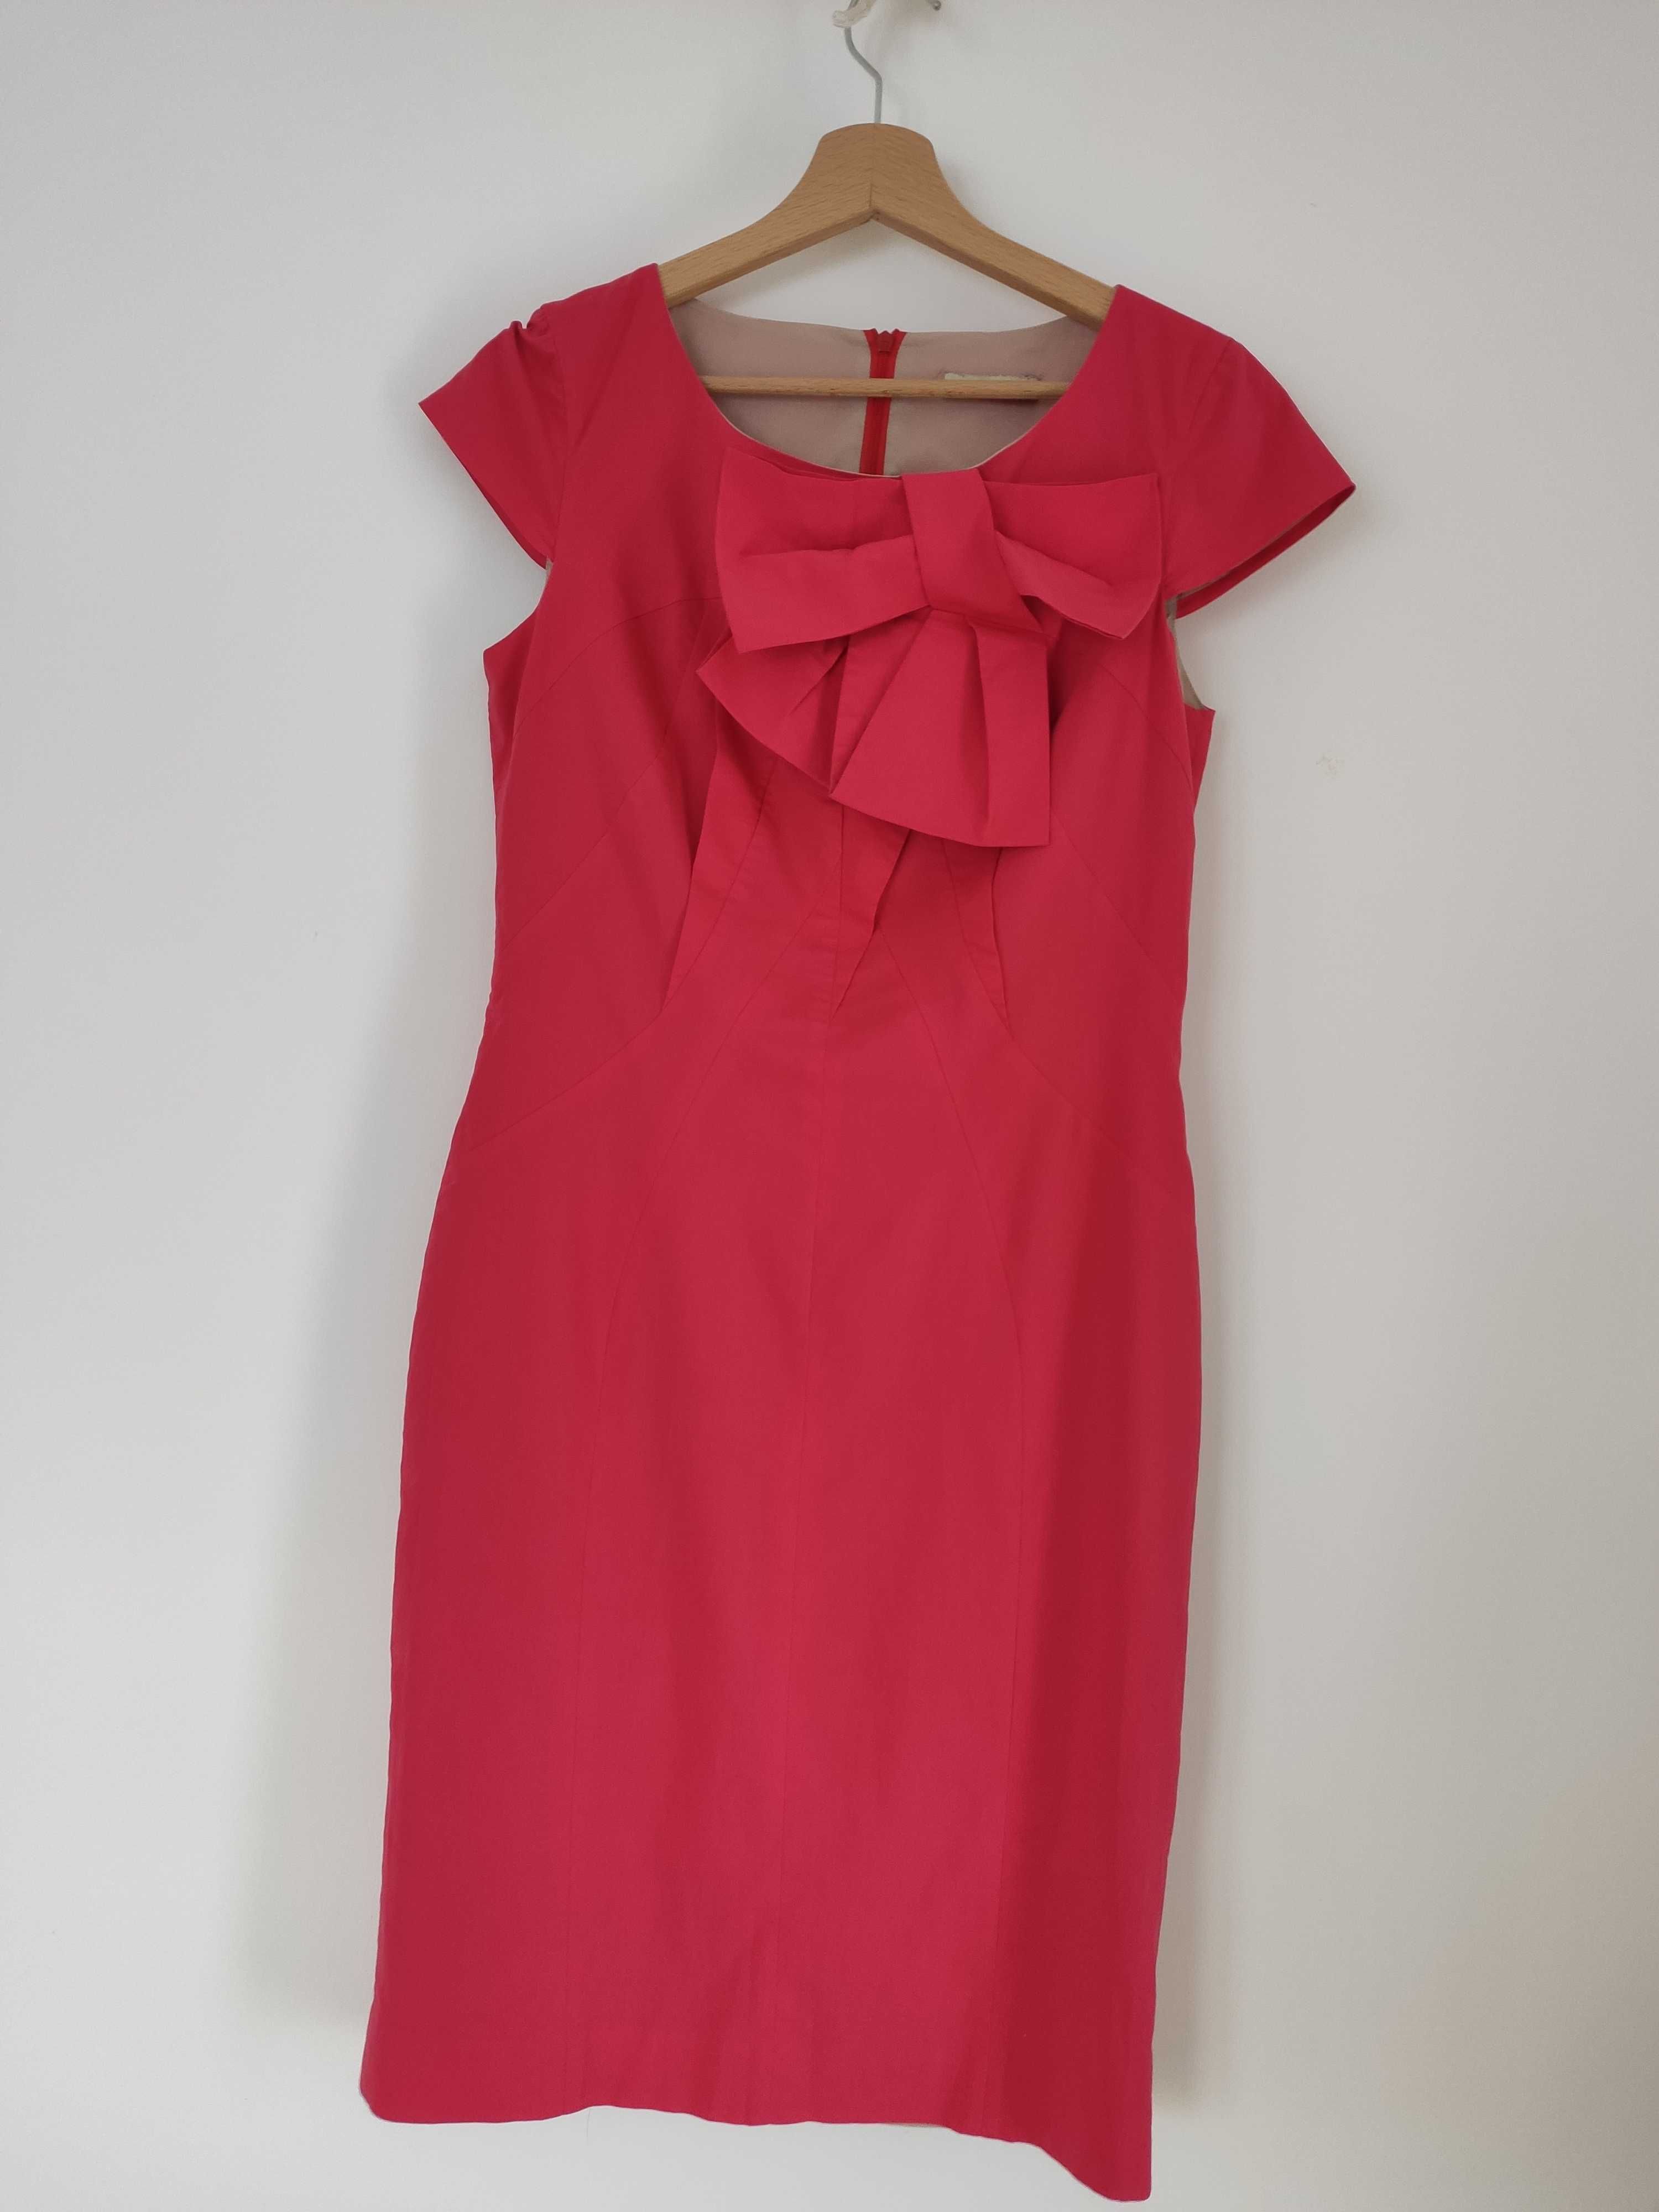 Malinowa różowa sukienka z kokardą Monnari 38 stan idealny